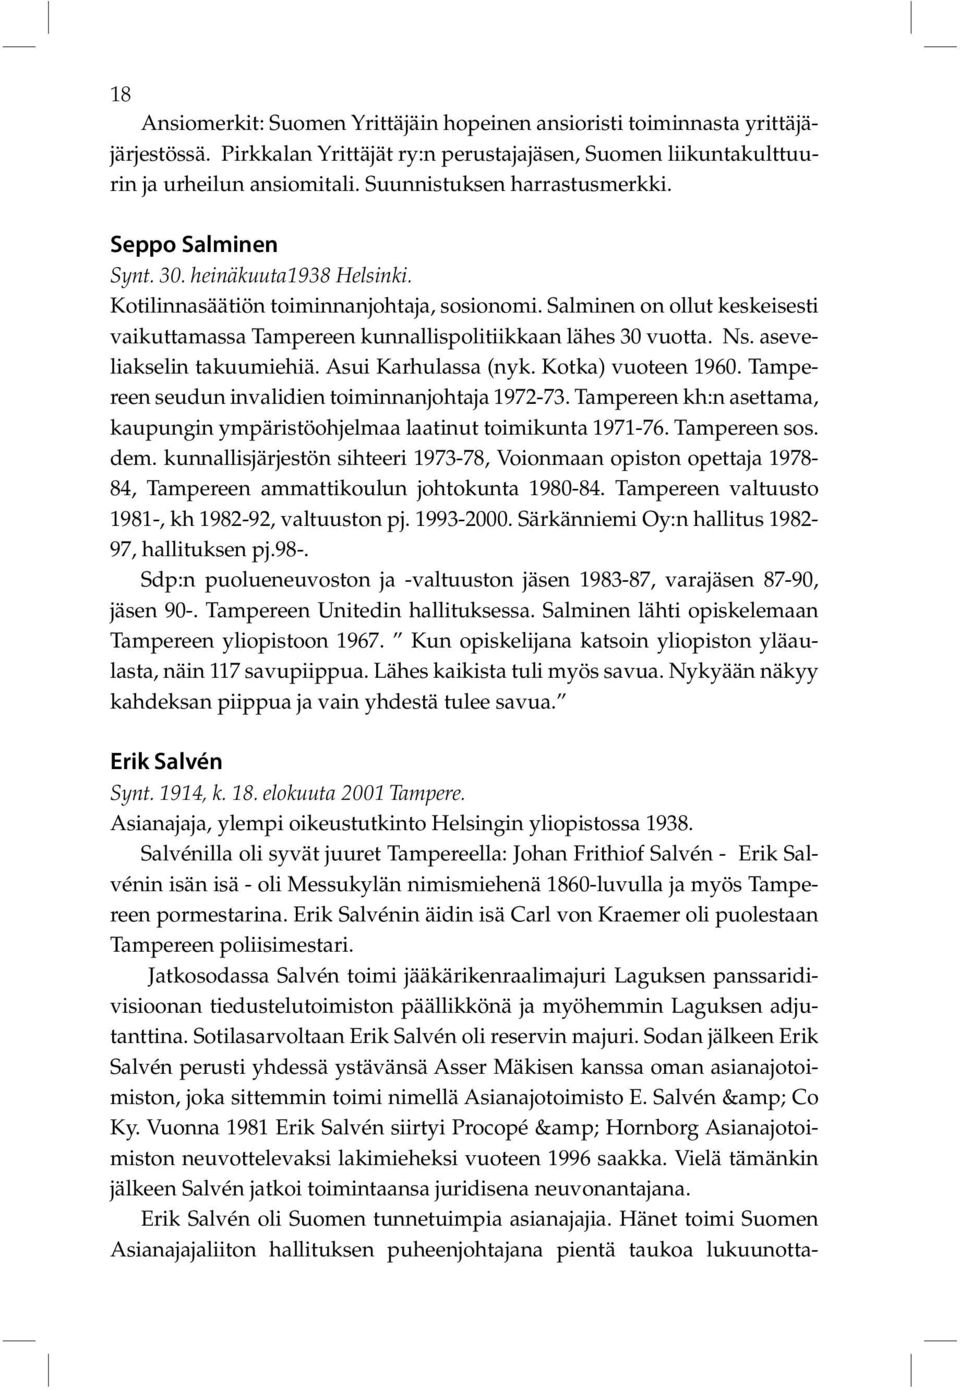 Salminen on ollut keskeisesti vaikuttamassa Tampereen kunnallispolitiikkaan lähes 30 vuotta. Ns. aseveliakselin takuumiehiä. Asui Karhulassa (nyk. Kotka) vuoteen 1960.